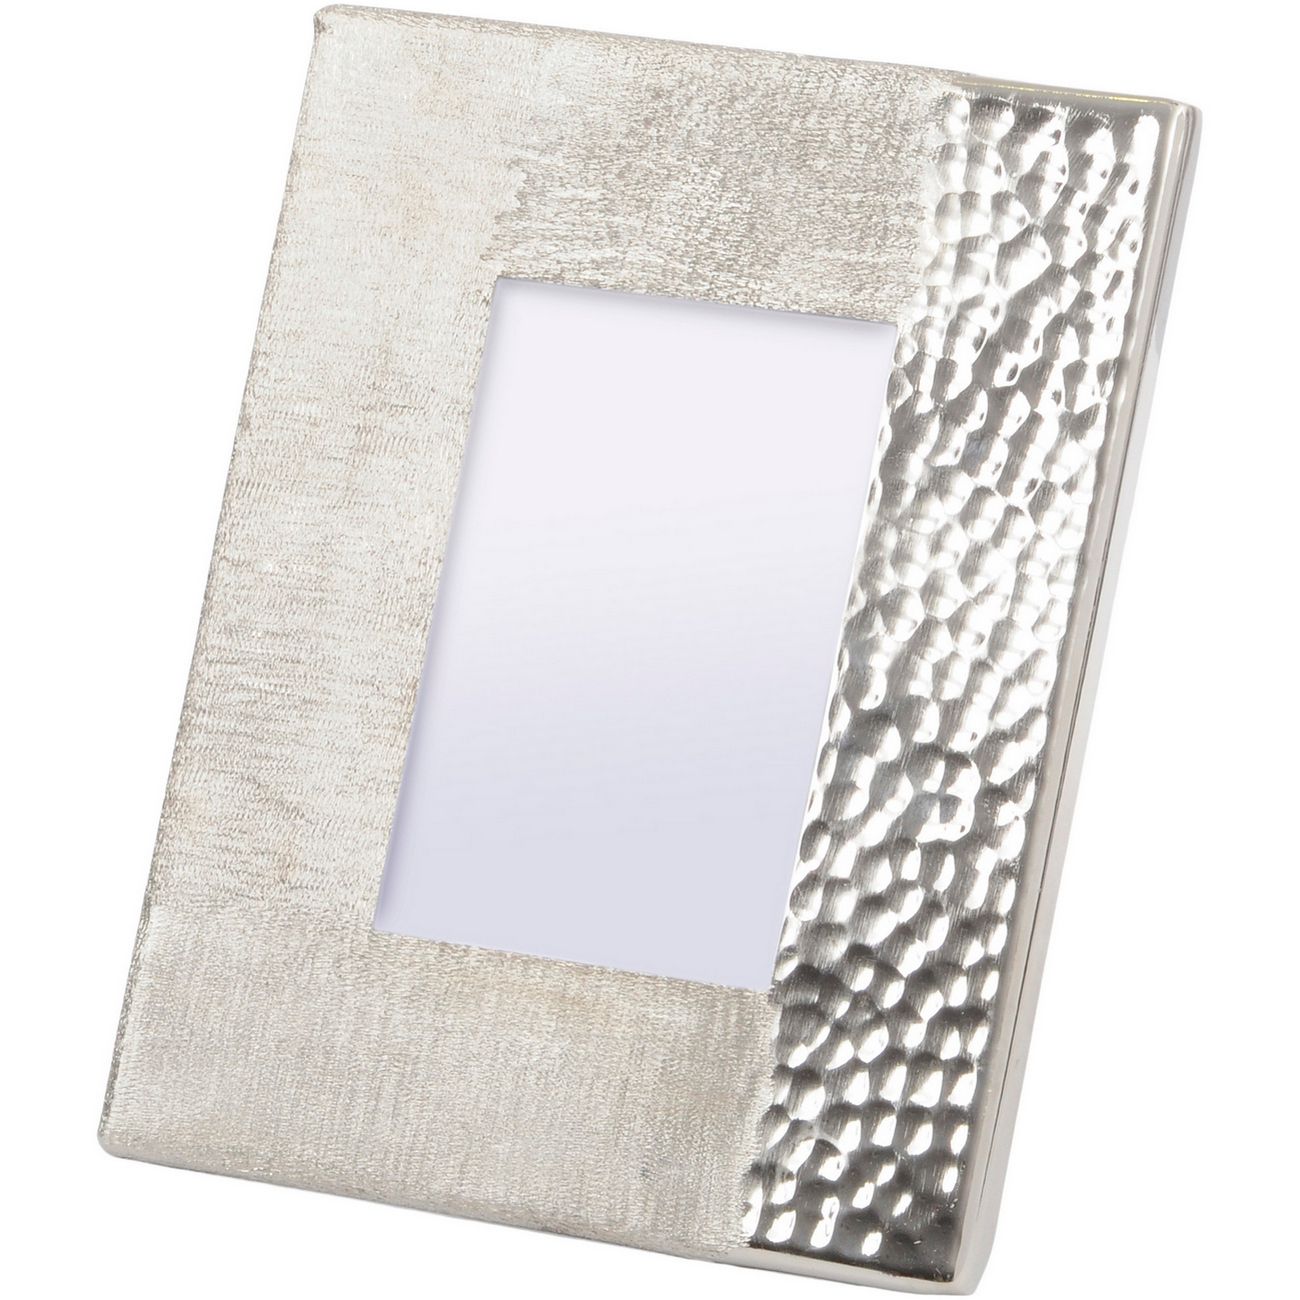 Fuse gehämmerter und gebürsteter 4x6-Zoll-Fotorahmen in Silber-Finish